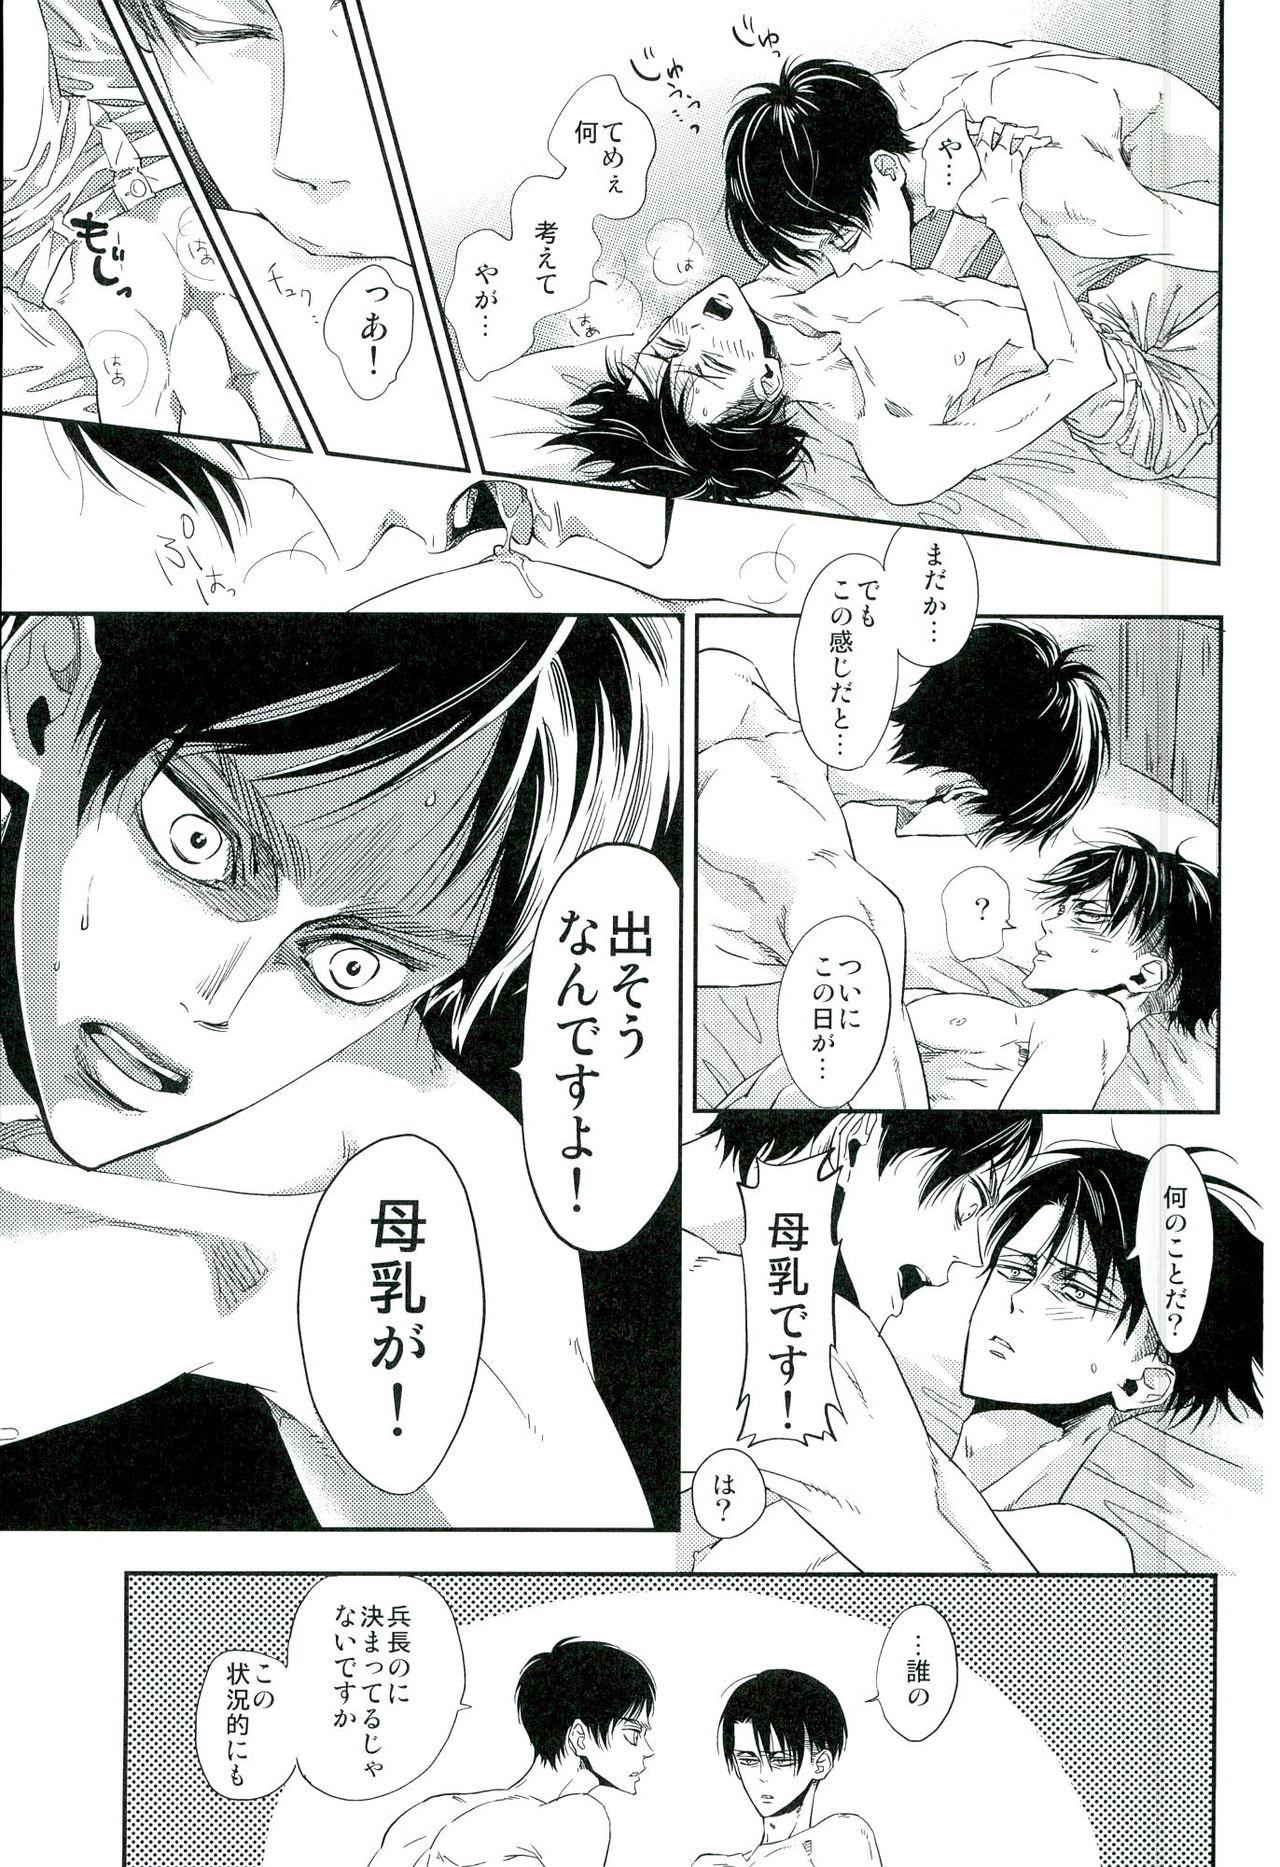 Tranny Sex 兵長のおっぱいから母乳が出るところが見たい! - Shingeki no kyojin Raw - Page 4